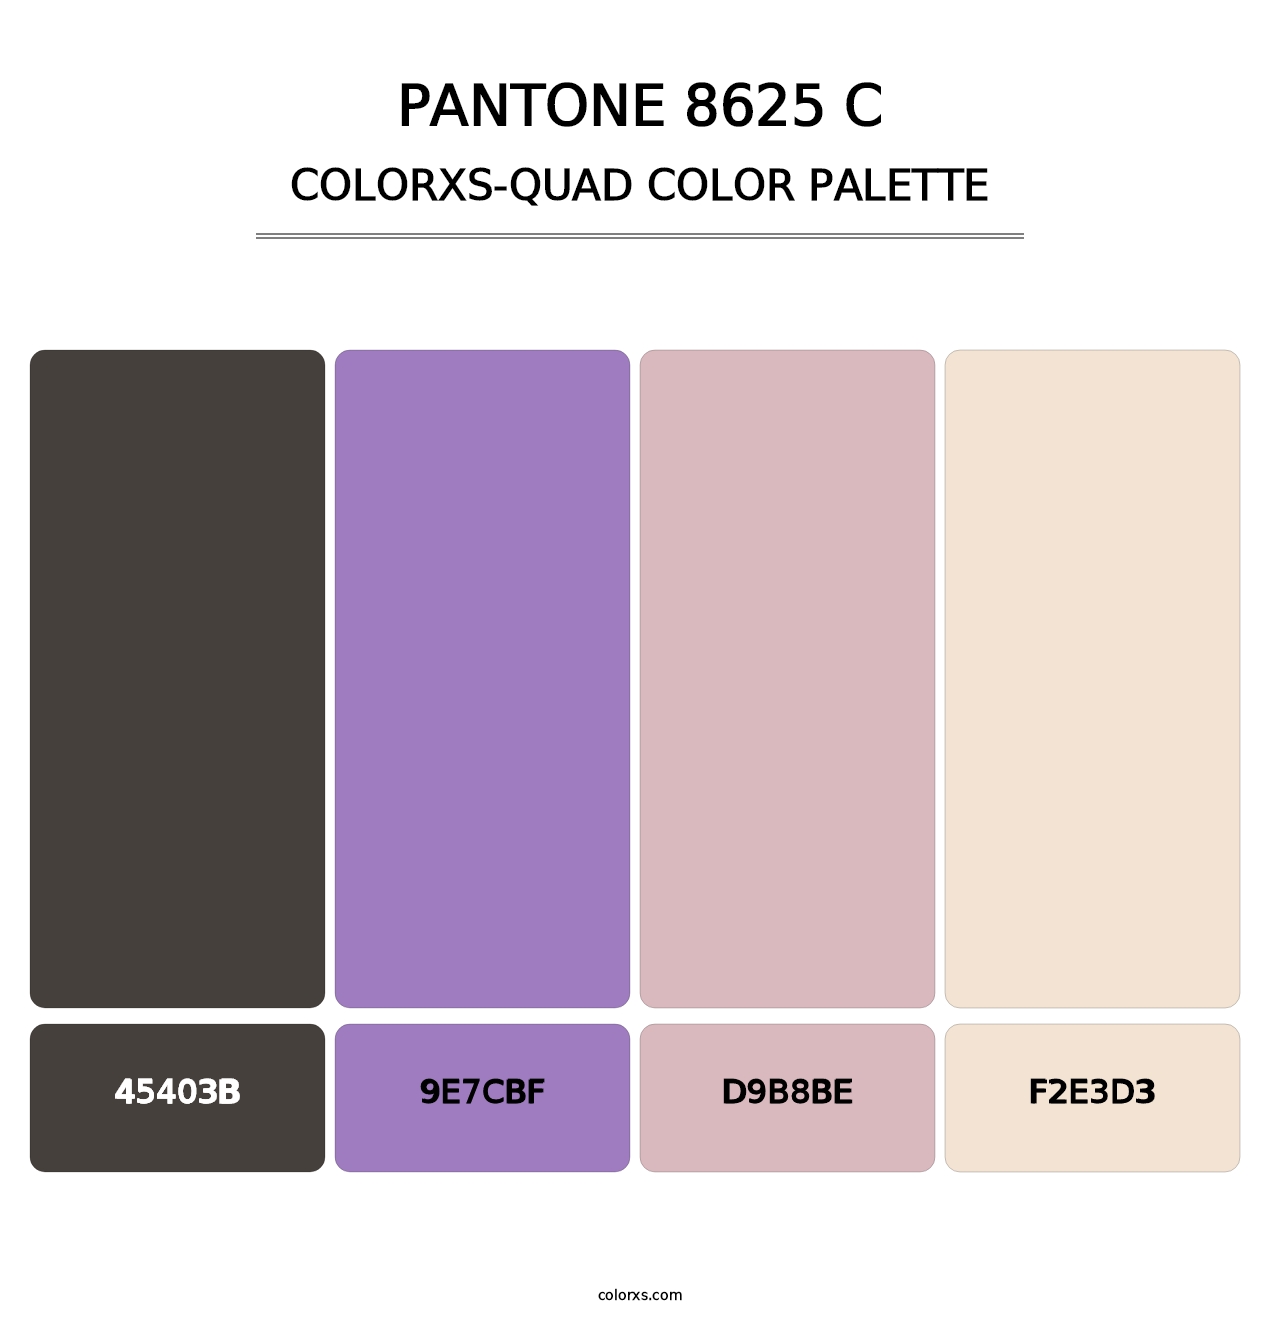 PANTONE 8625 C - Colorxs Quad Palette